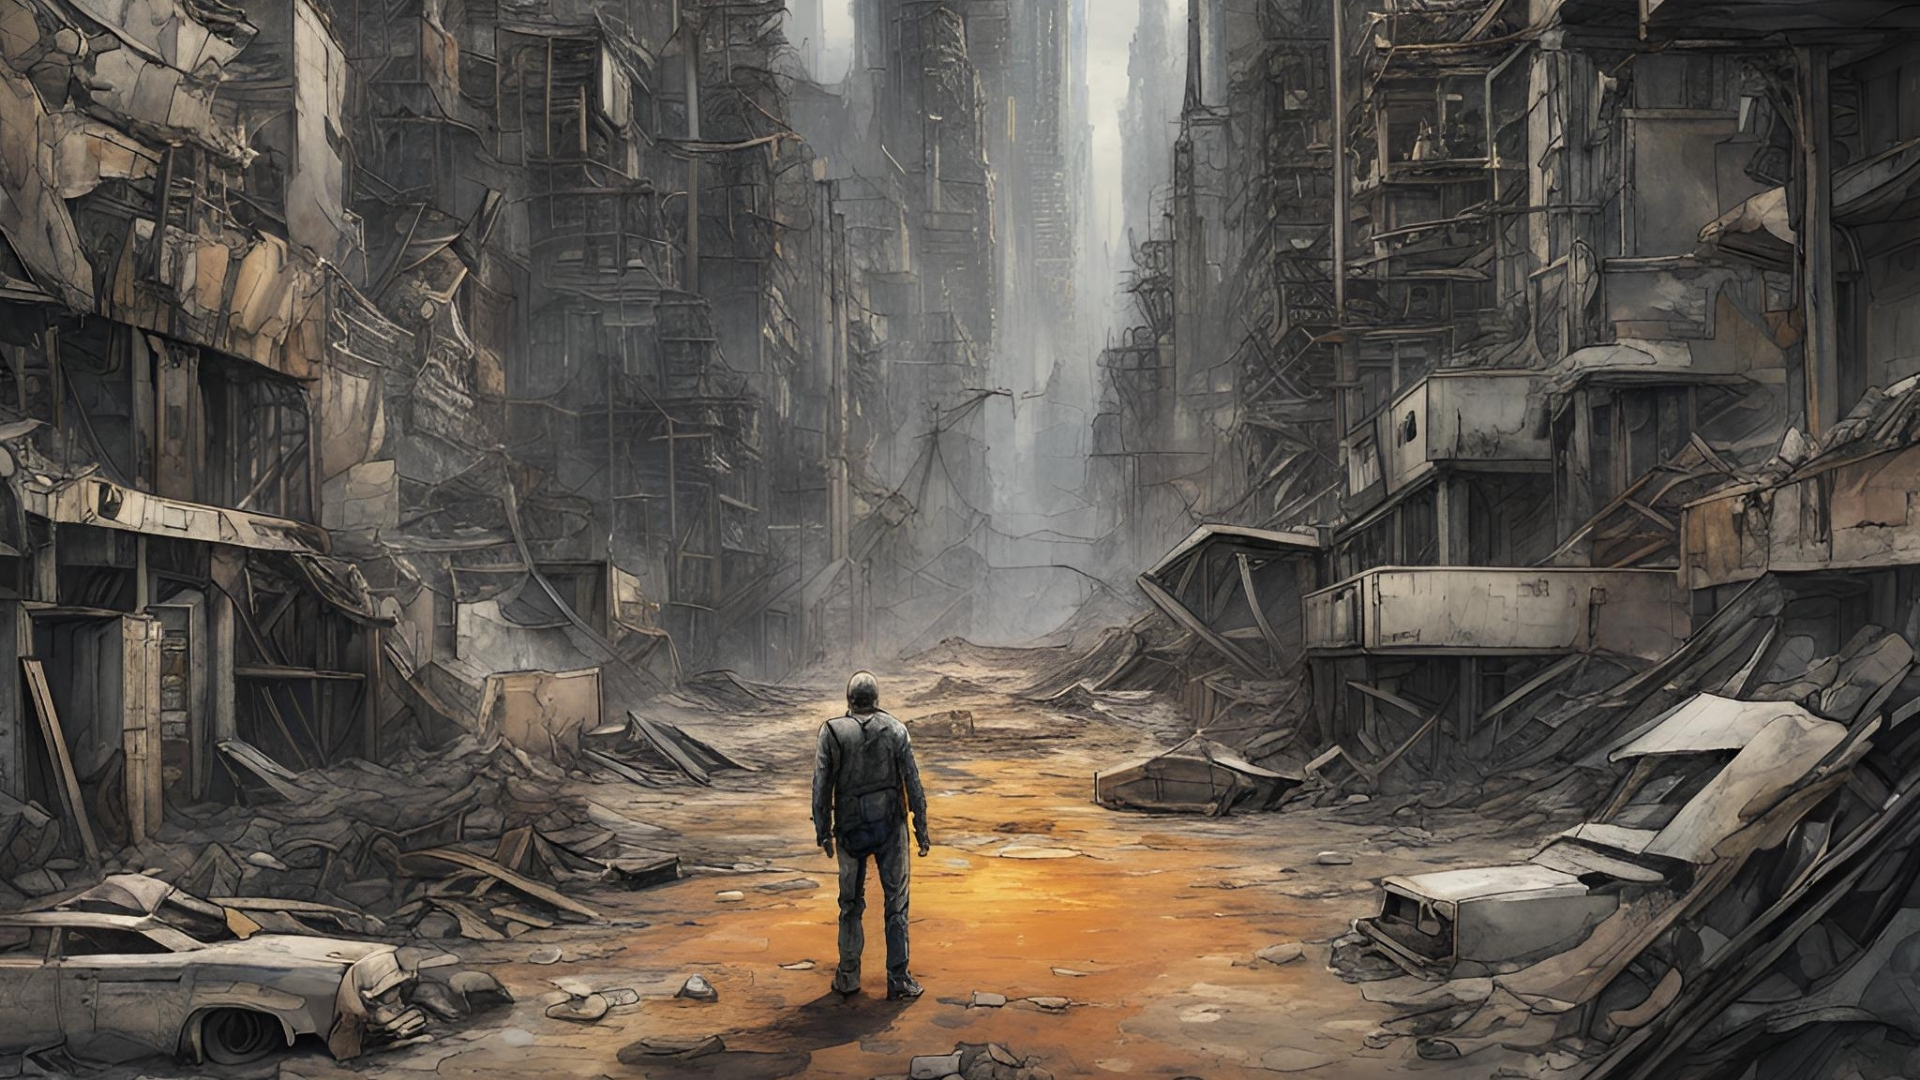 Gölgedeki Gelecek: Distopyanın Yansıması